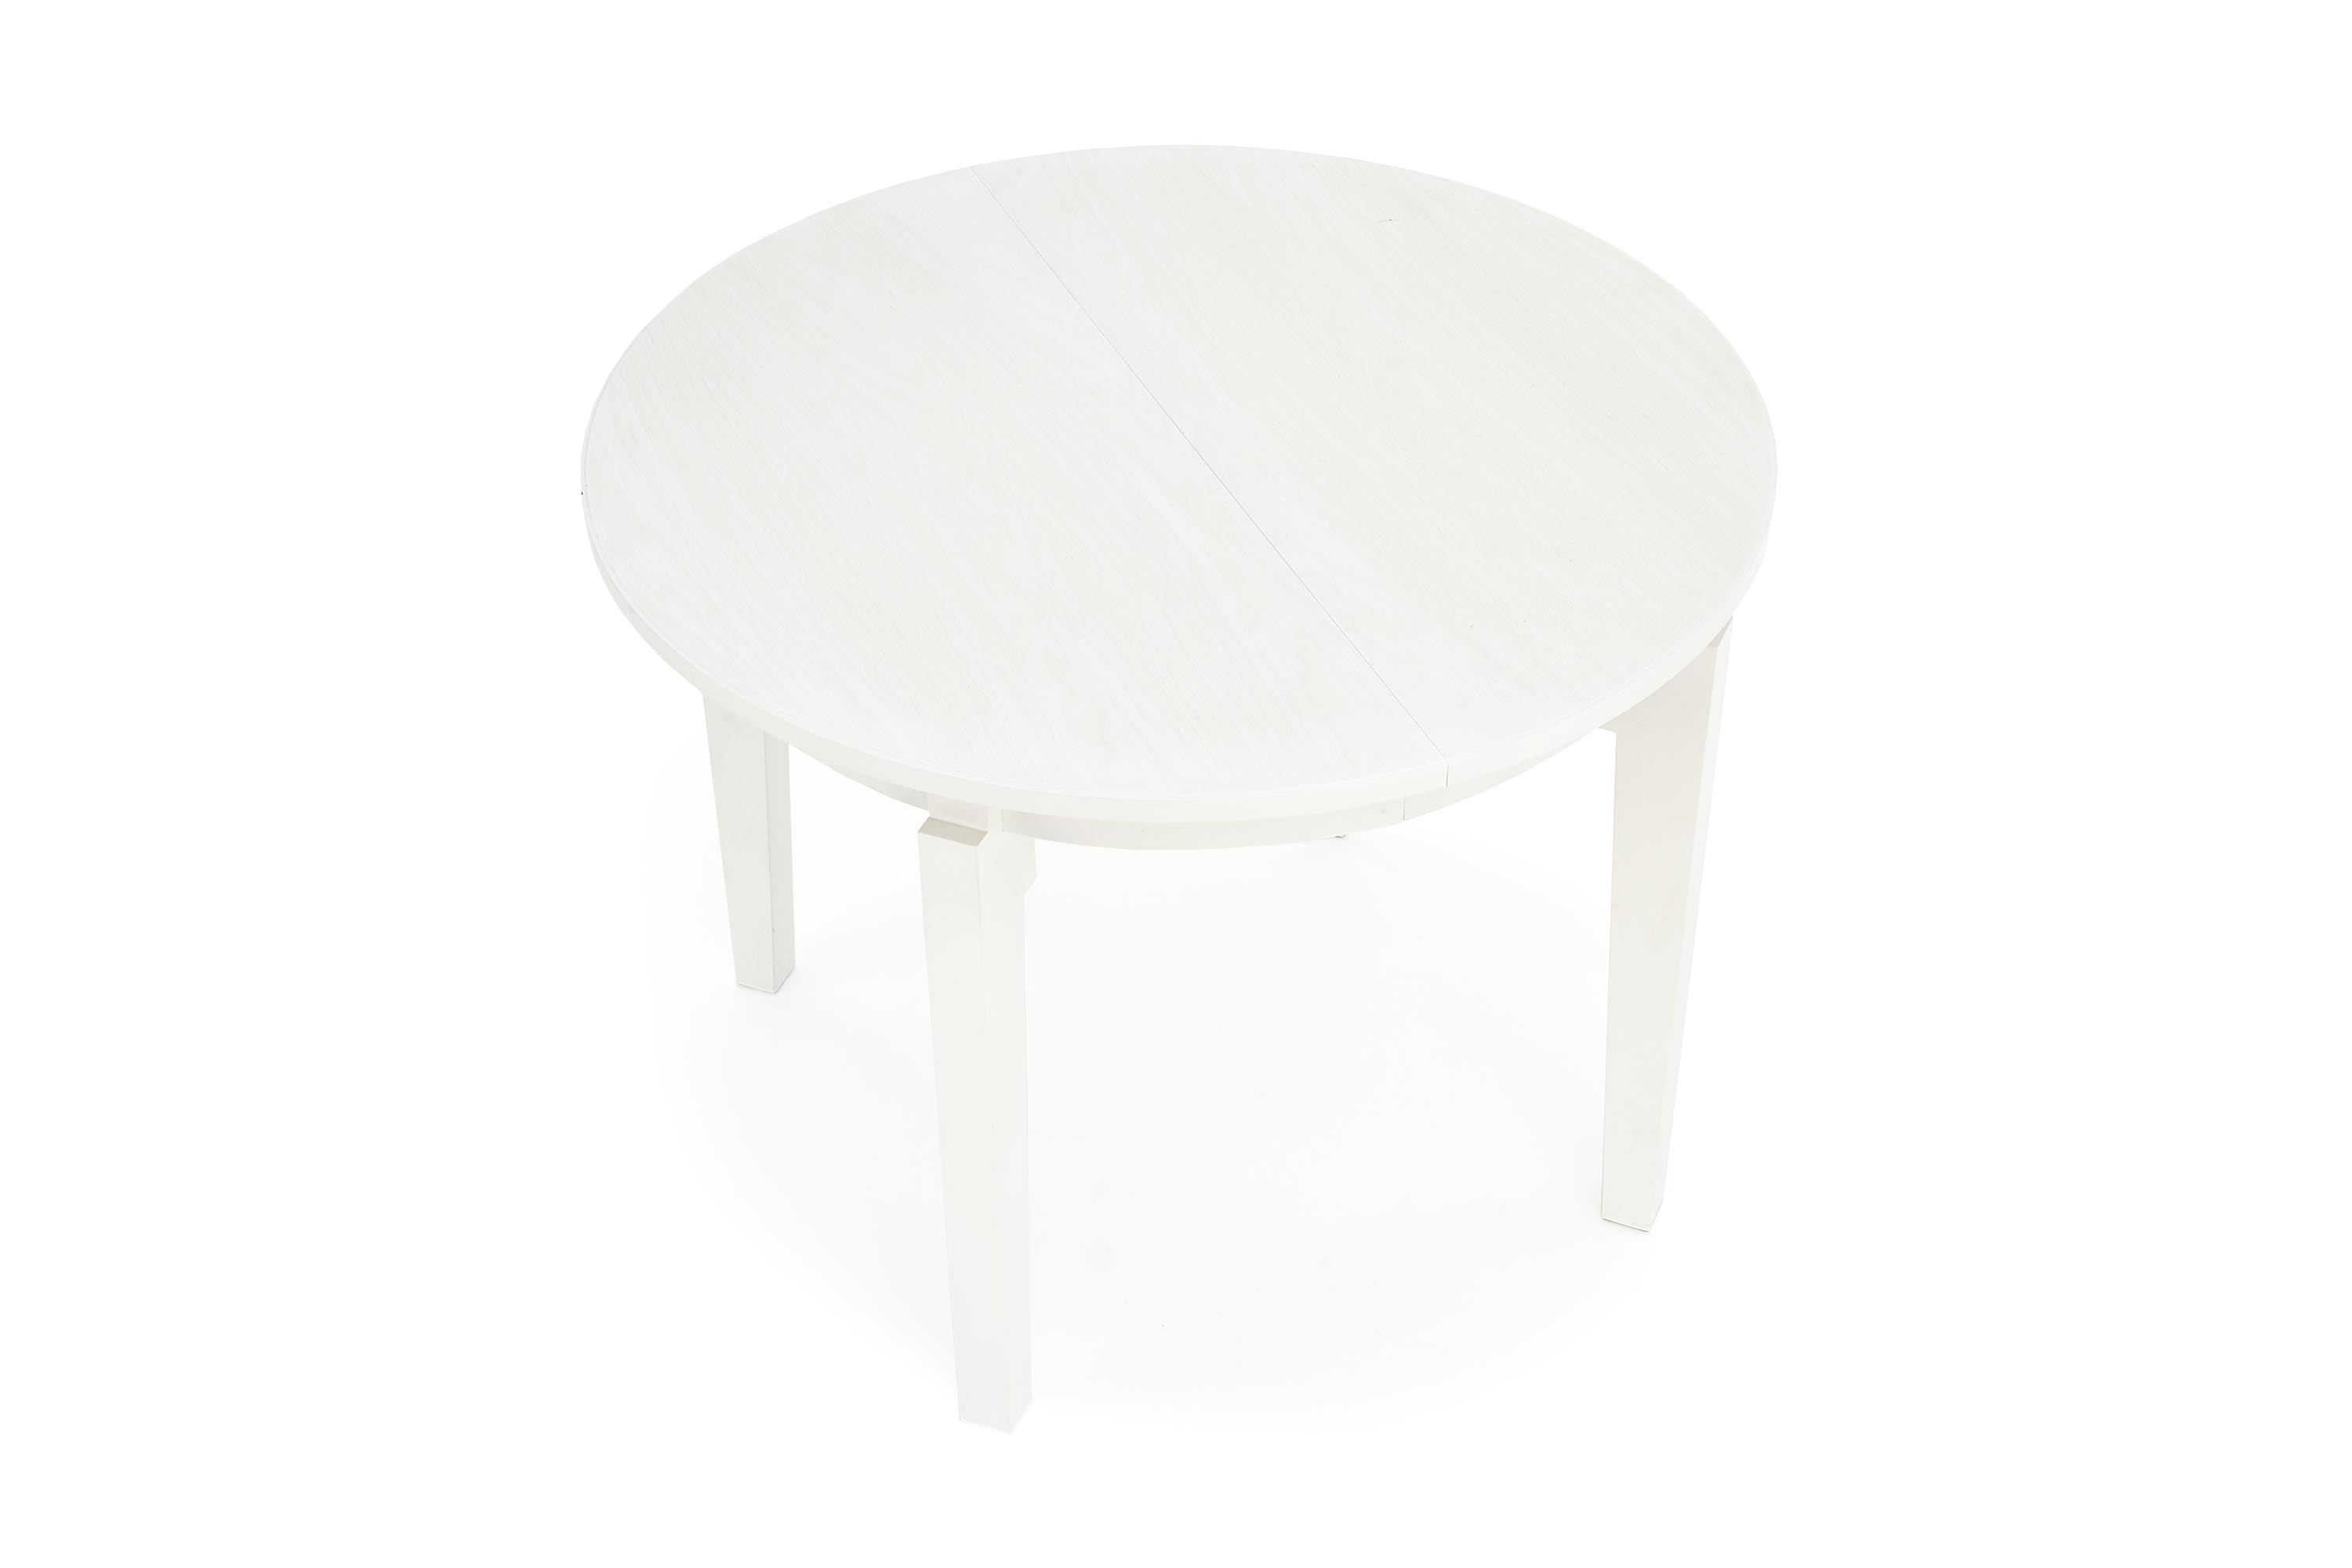 SORBUS stół rozkładany, blat - biały, nogi - białe